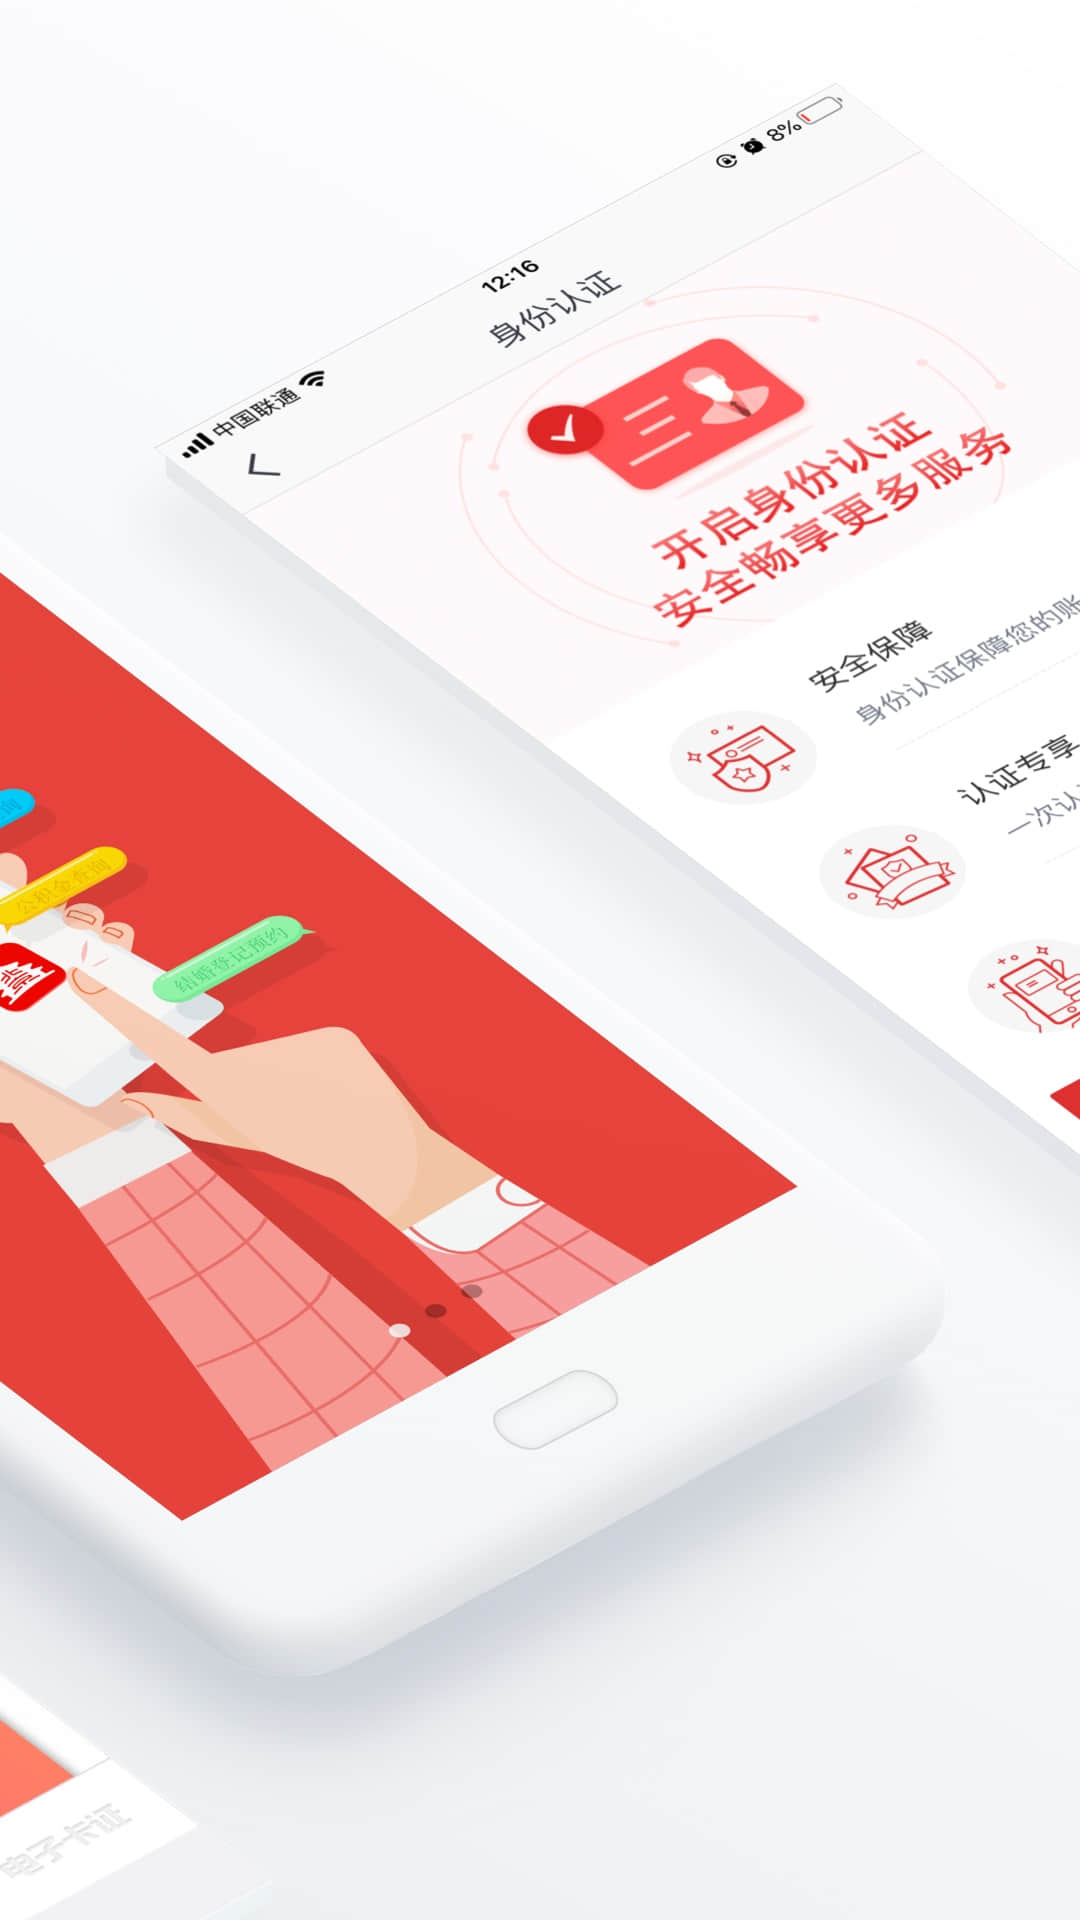 北京通app下载安装 3.8.33.10.3